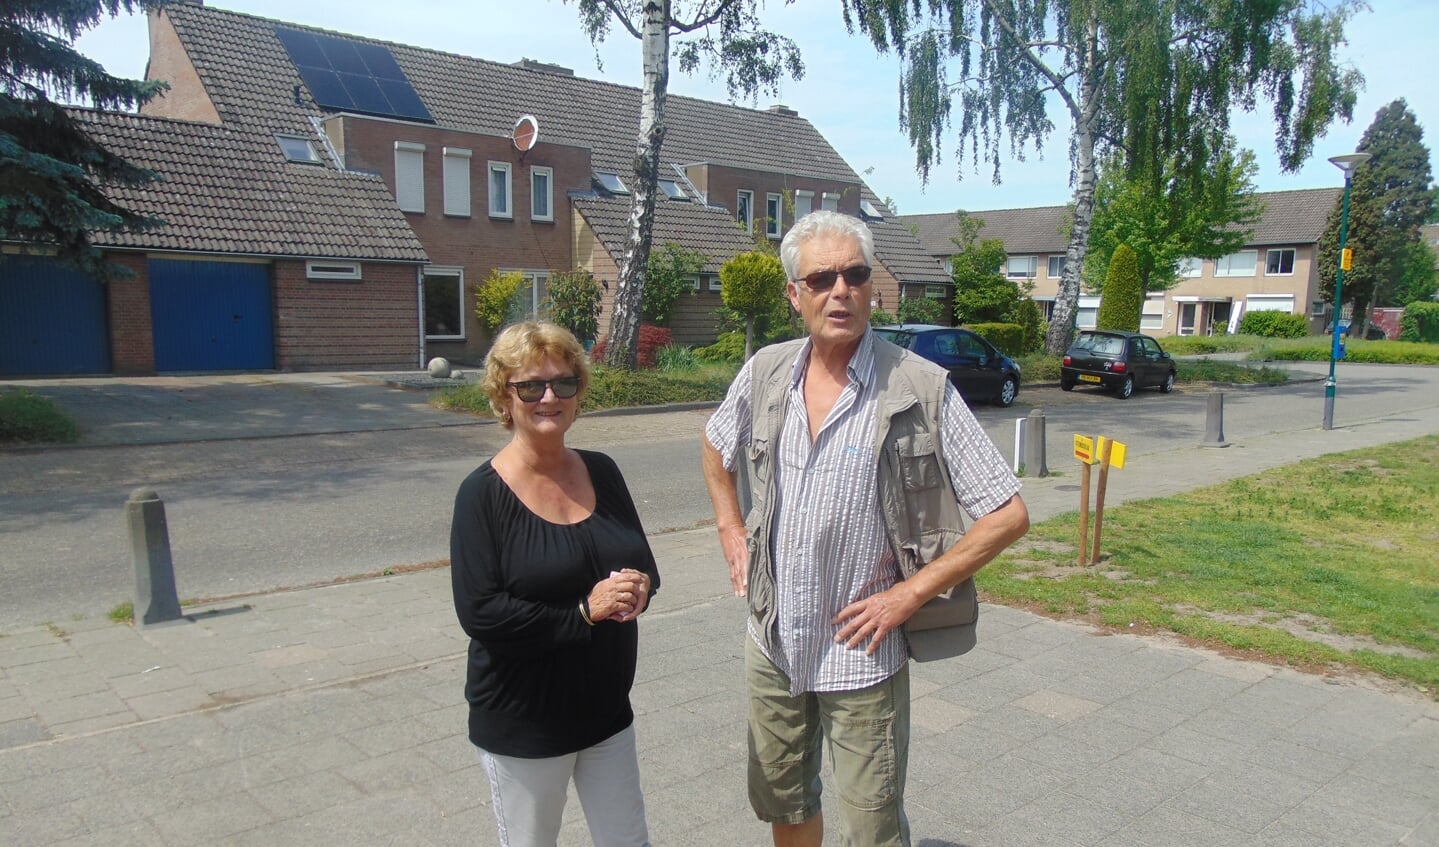 Dhr. en mevrouw Van der Wiel